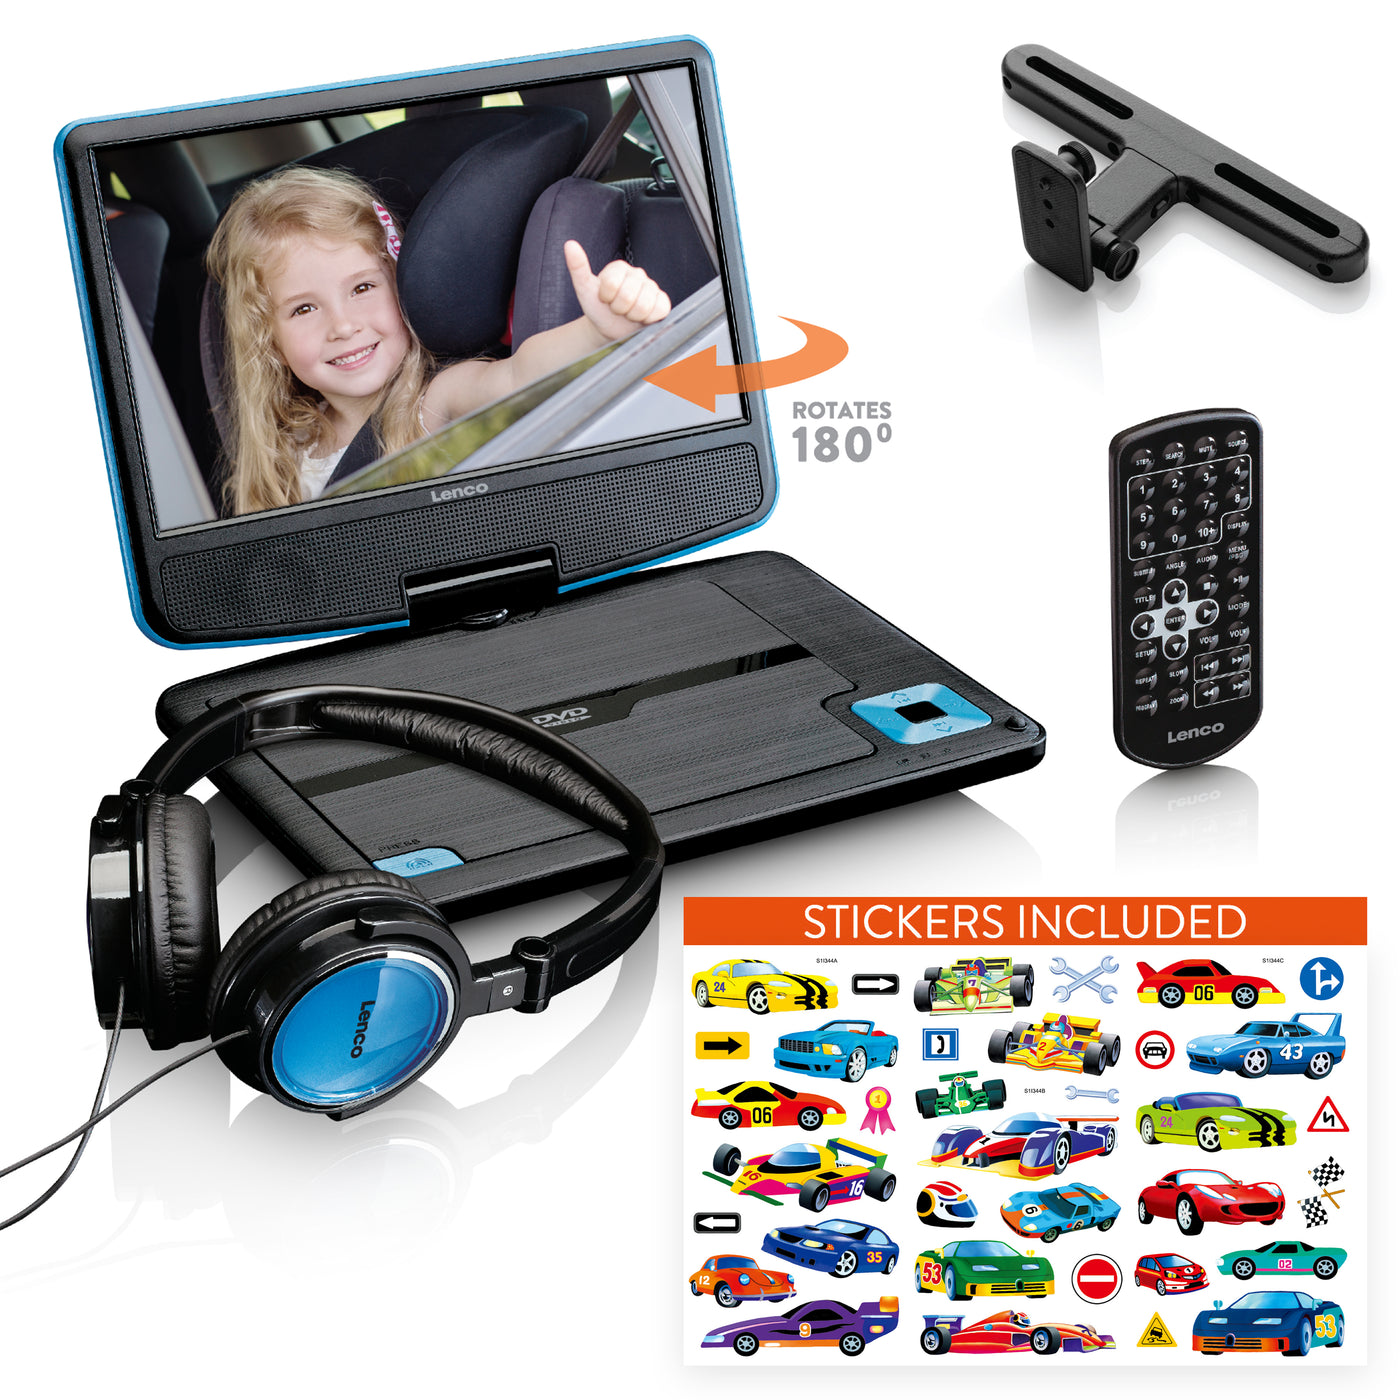 LENCO DVP-920BU - Przenośny odtwarzacz DVD 9" ze słuchawkami USB i uchwytem montażowym - Niebieski/Czarny